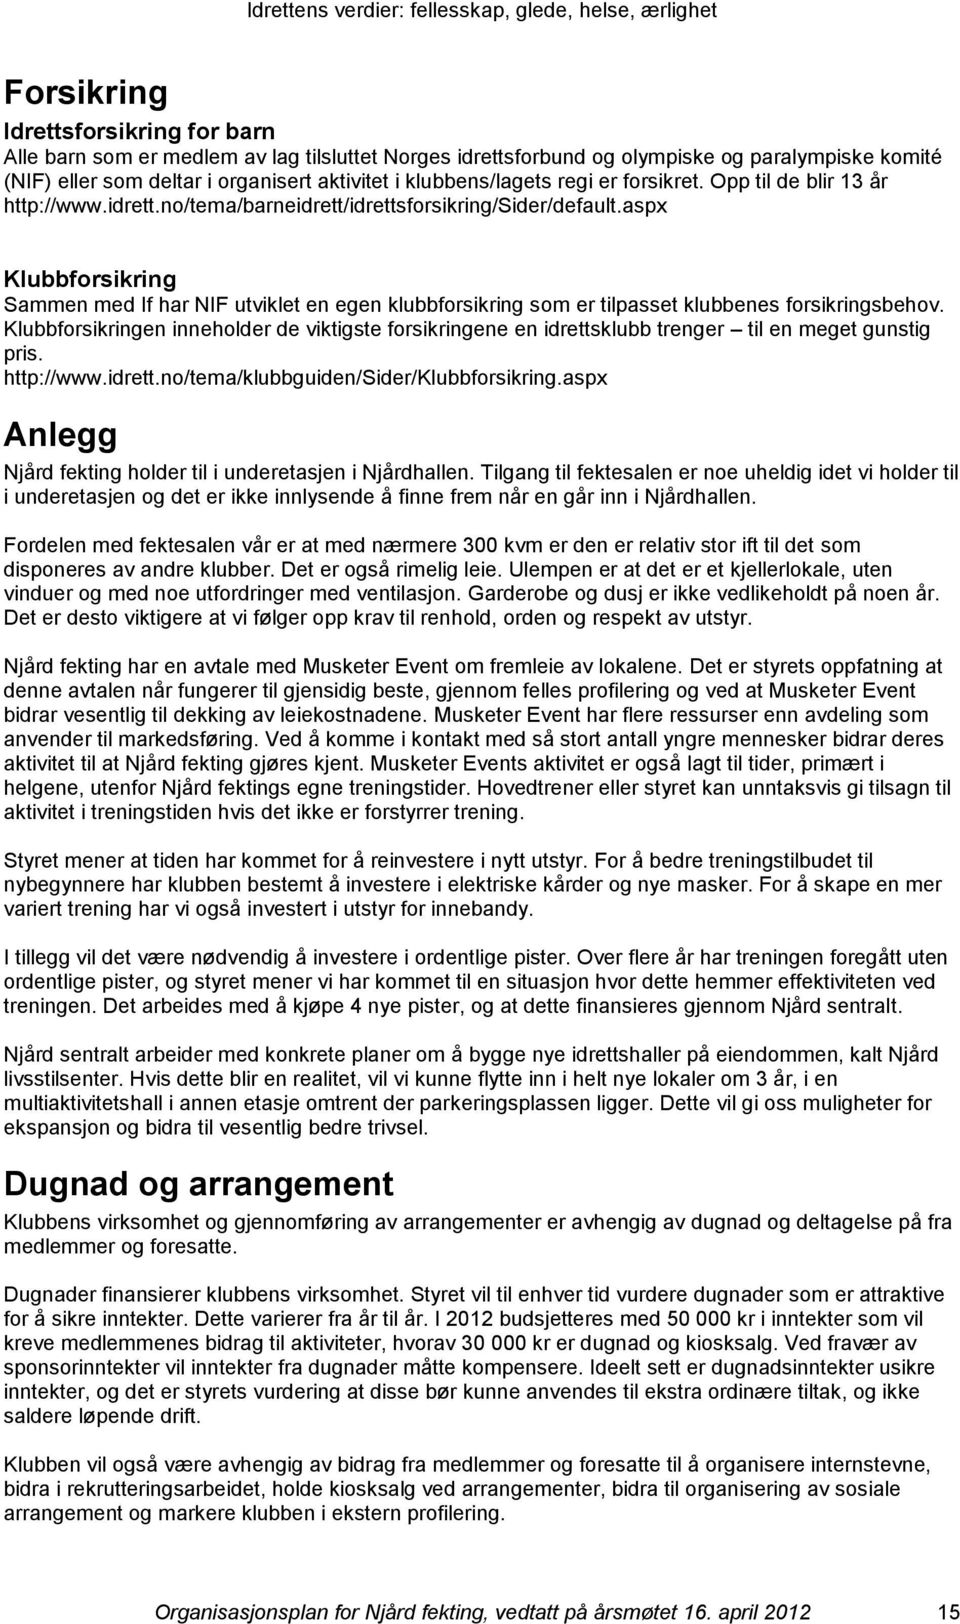 aspx Klubbfrsikring Sammen med If har NIF utviklet en egen klubbfrsikring sm er tilpasset klubbenes frsikringsbehv.